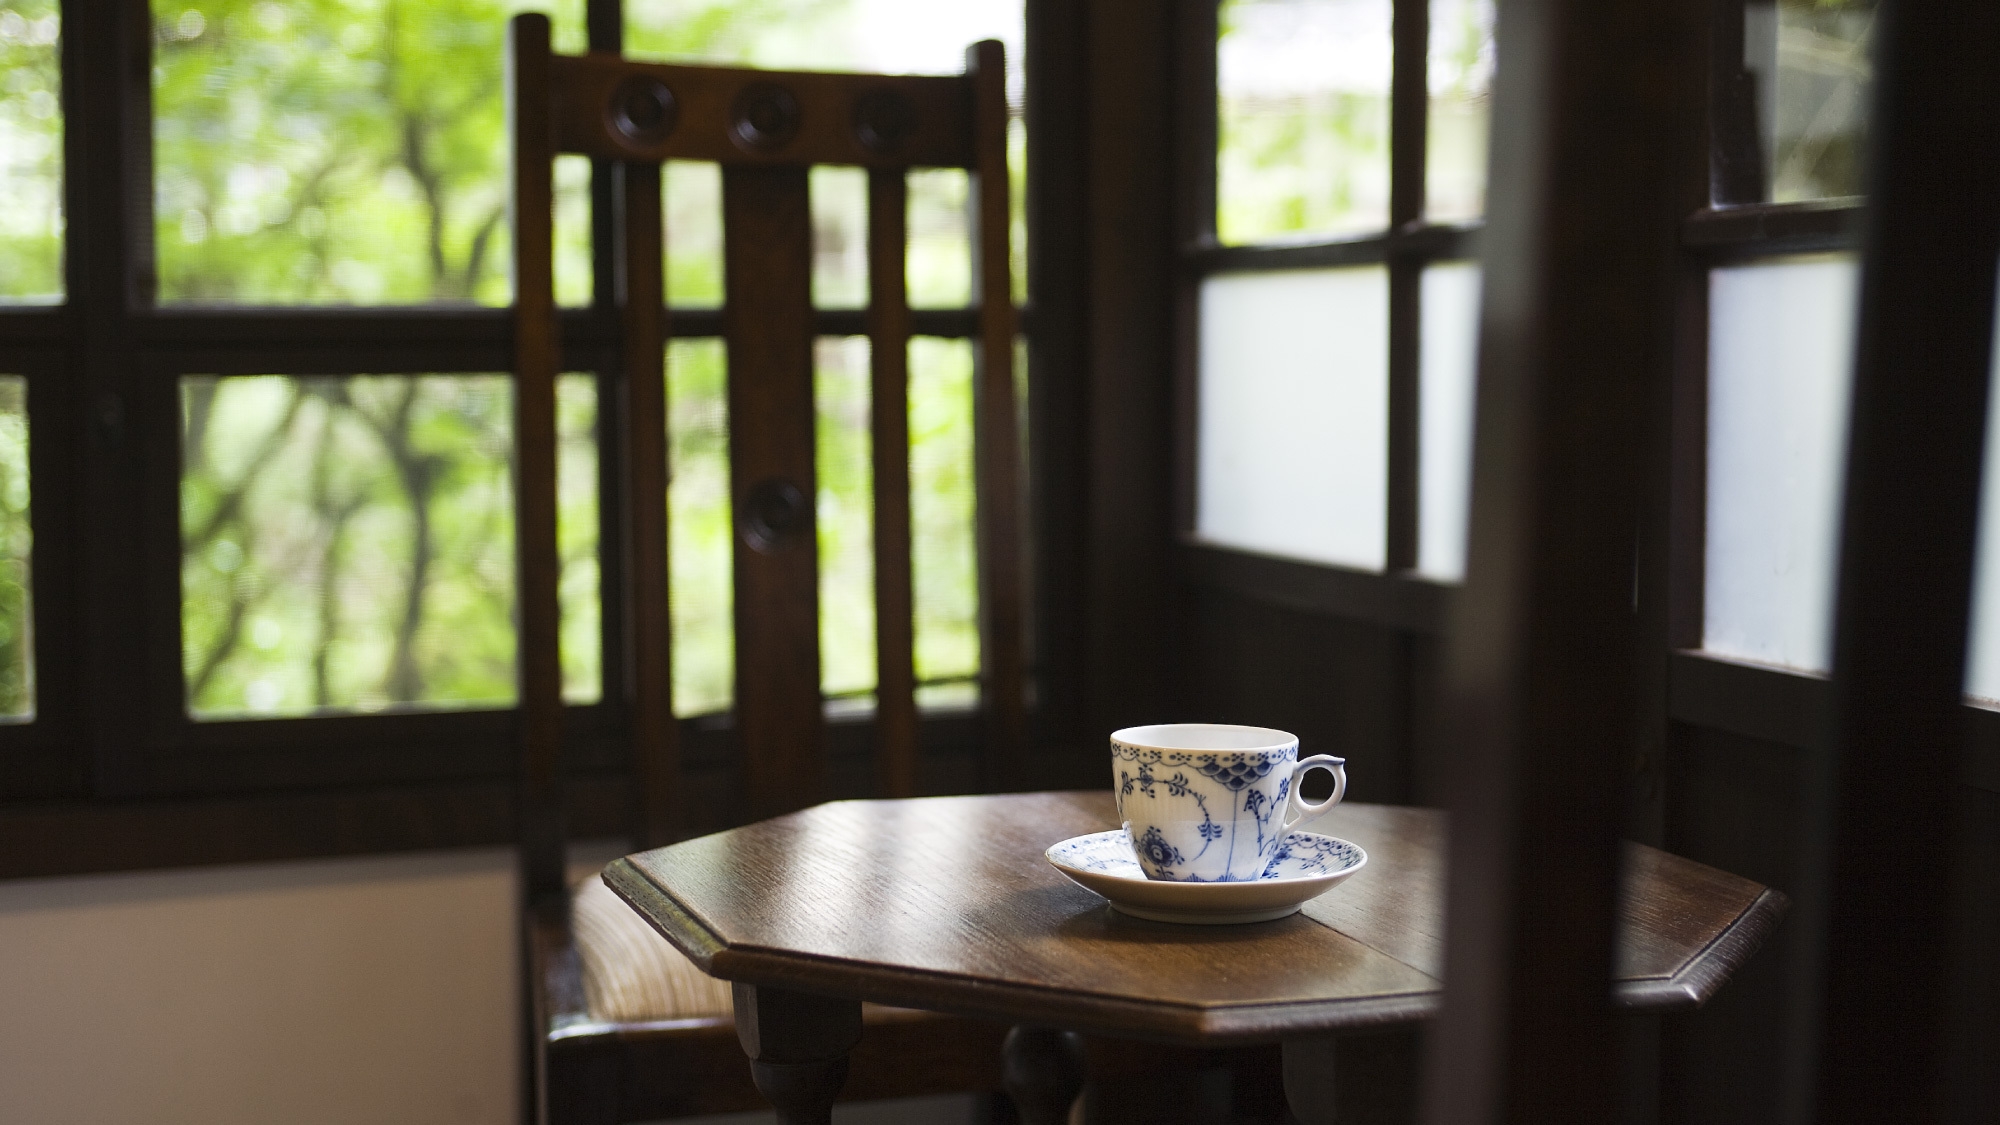 【金沢ひとり旅】古き良き、静かな温泉宿でゆったり■石屋会席は食事処のプライベートな空間で